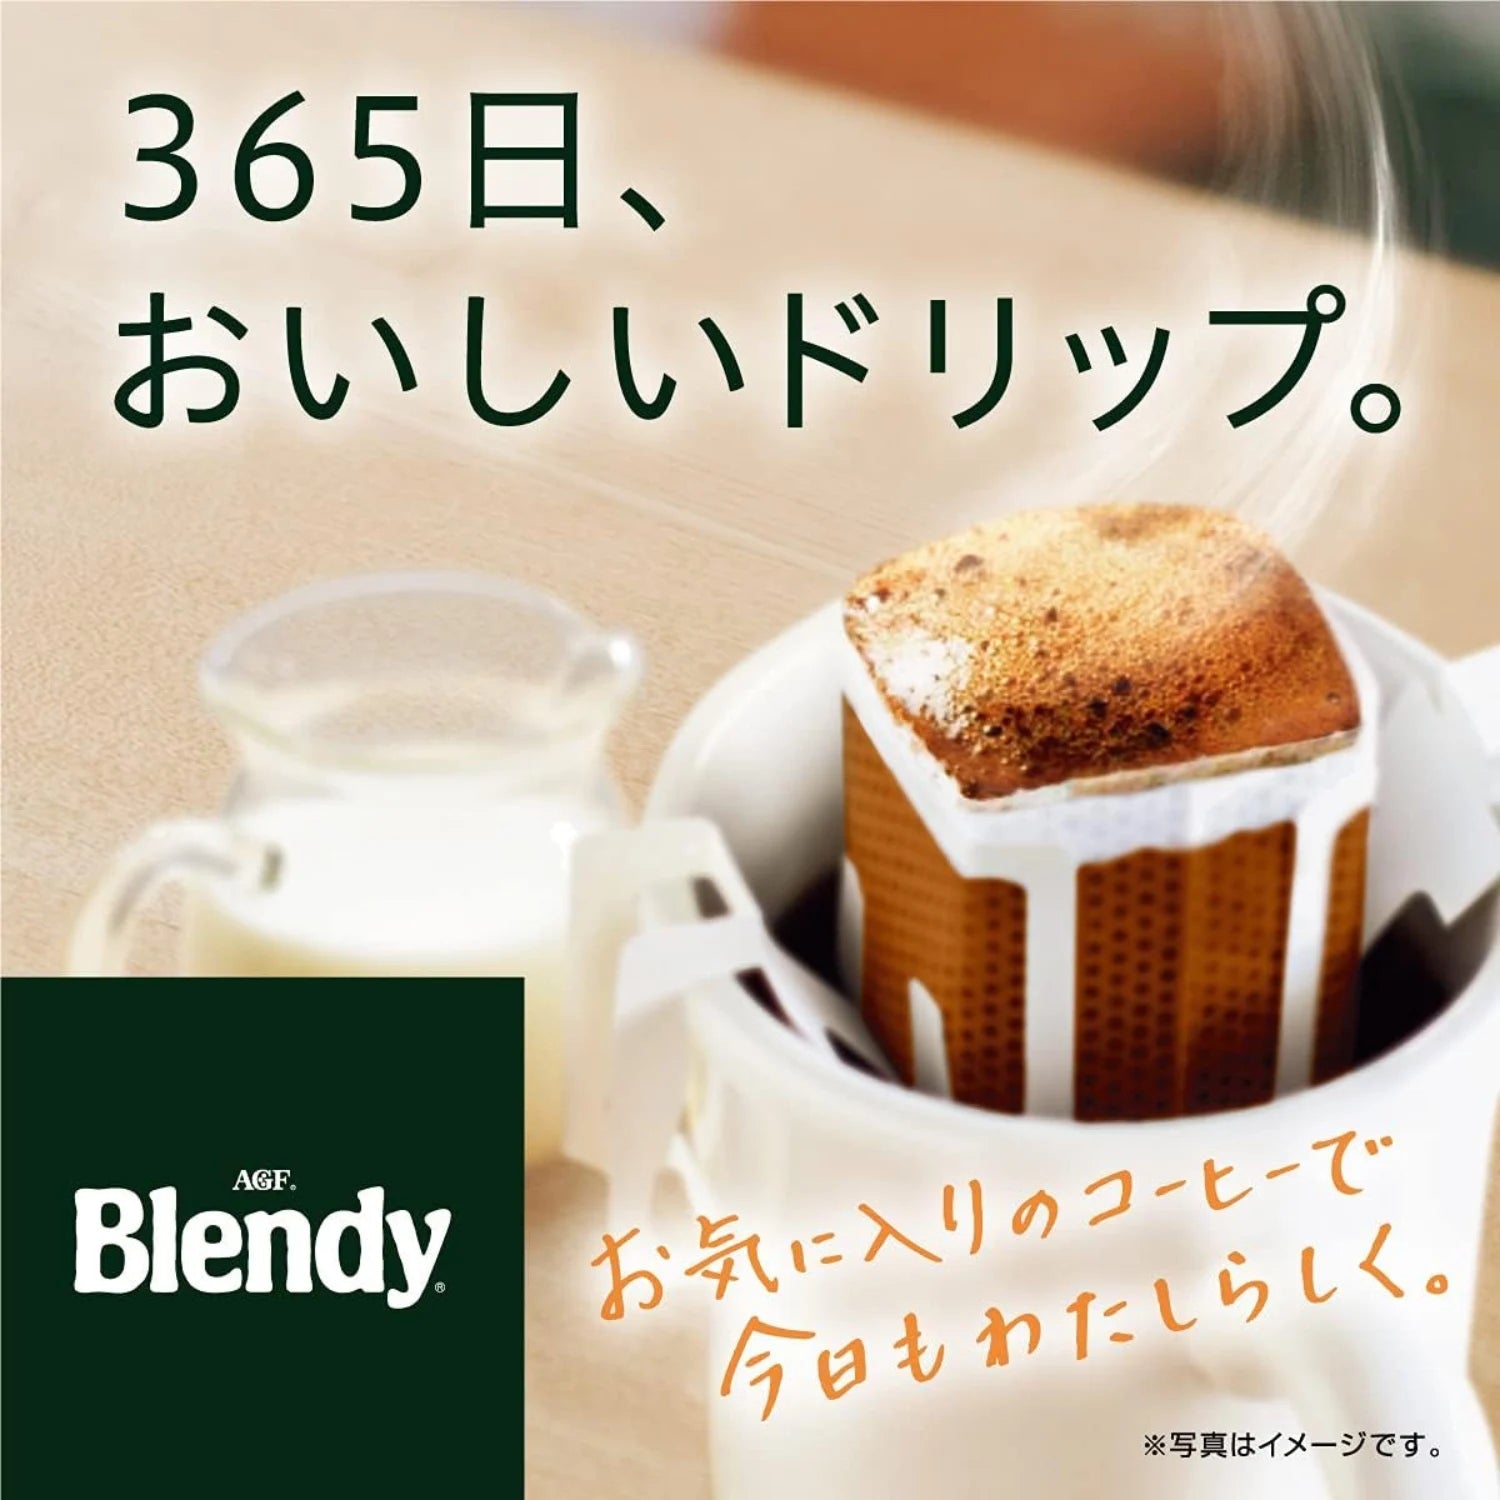 AGF Blendy Drip Coffee Special Blend (Pack of 18) - Buy Me Japan